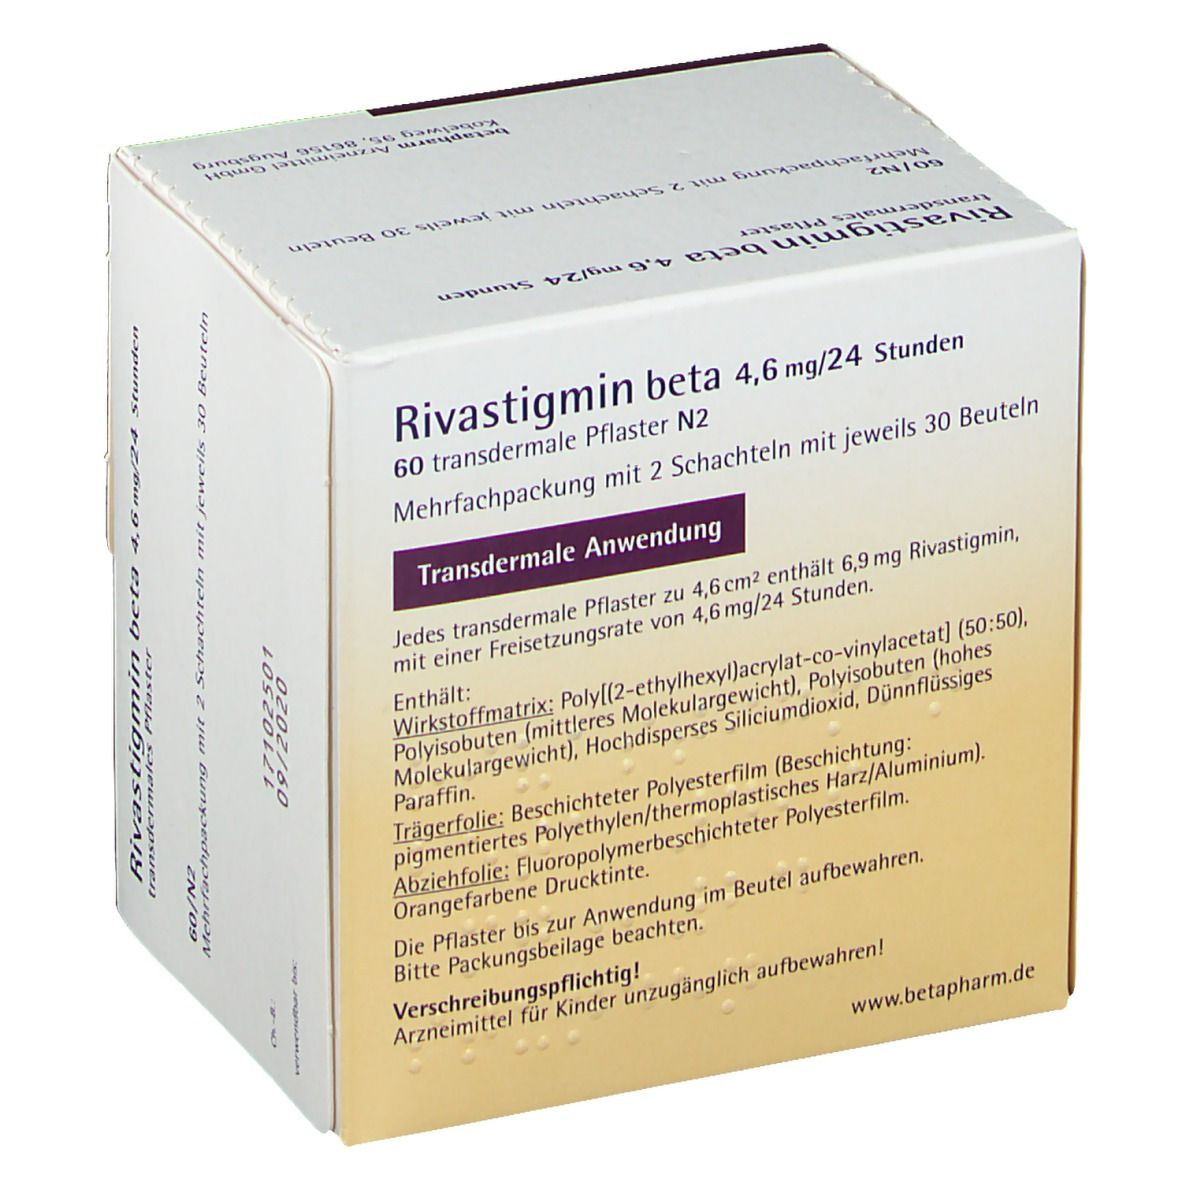 Rivastigmin beta 4,6 mg/24 Stunden